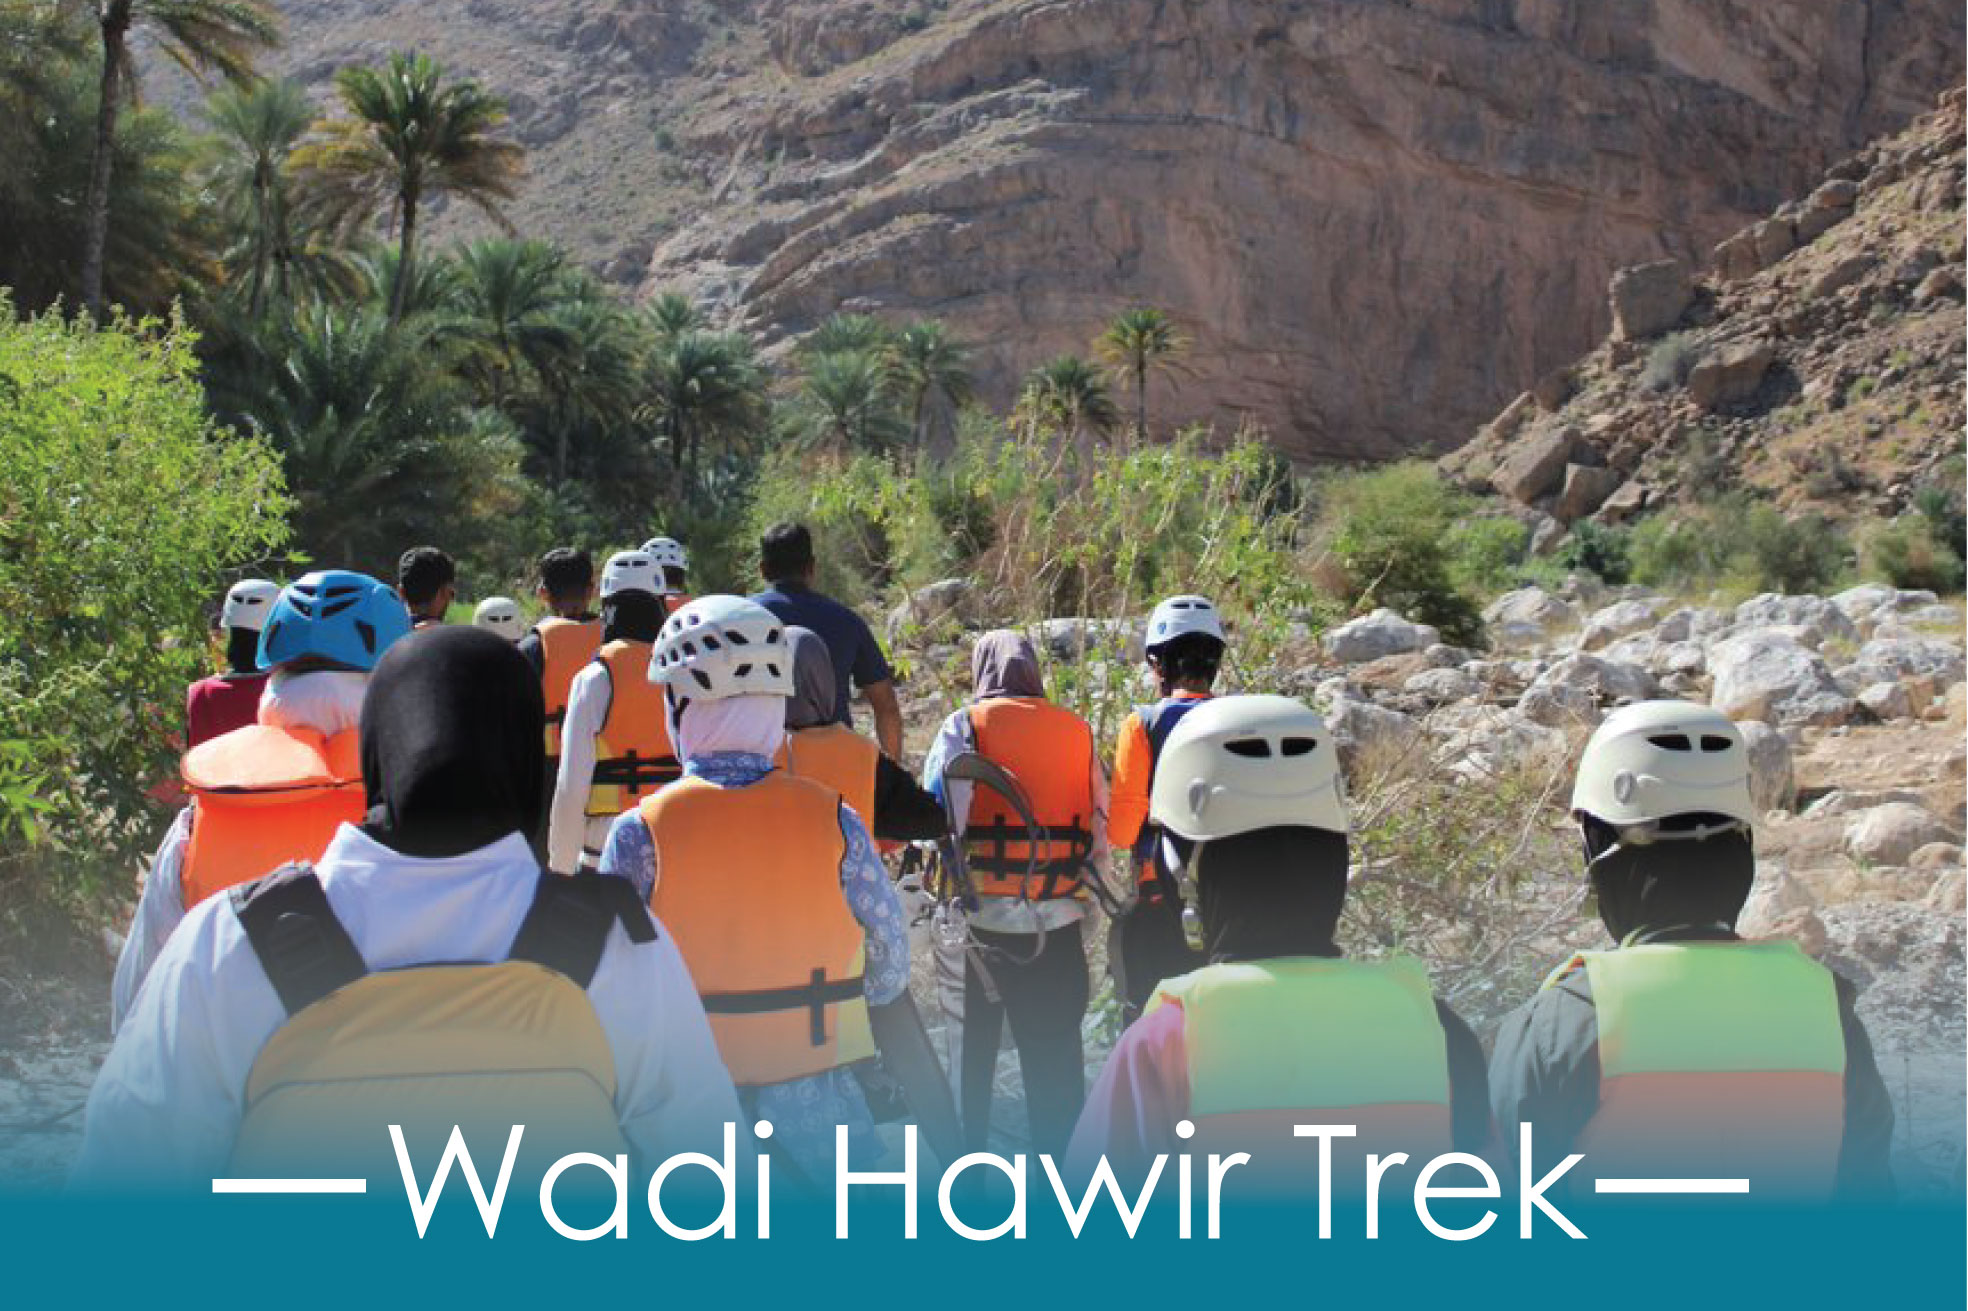 Wadi Hawir